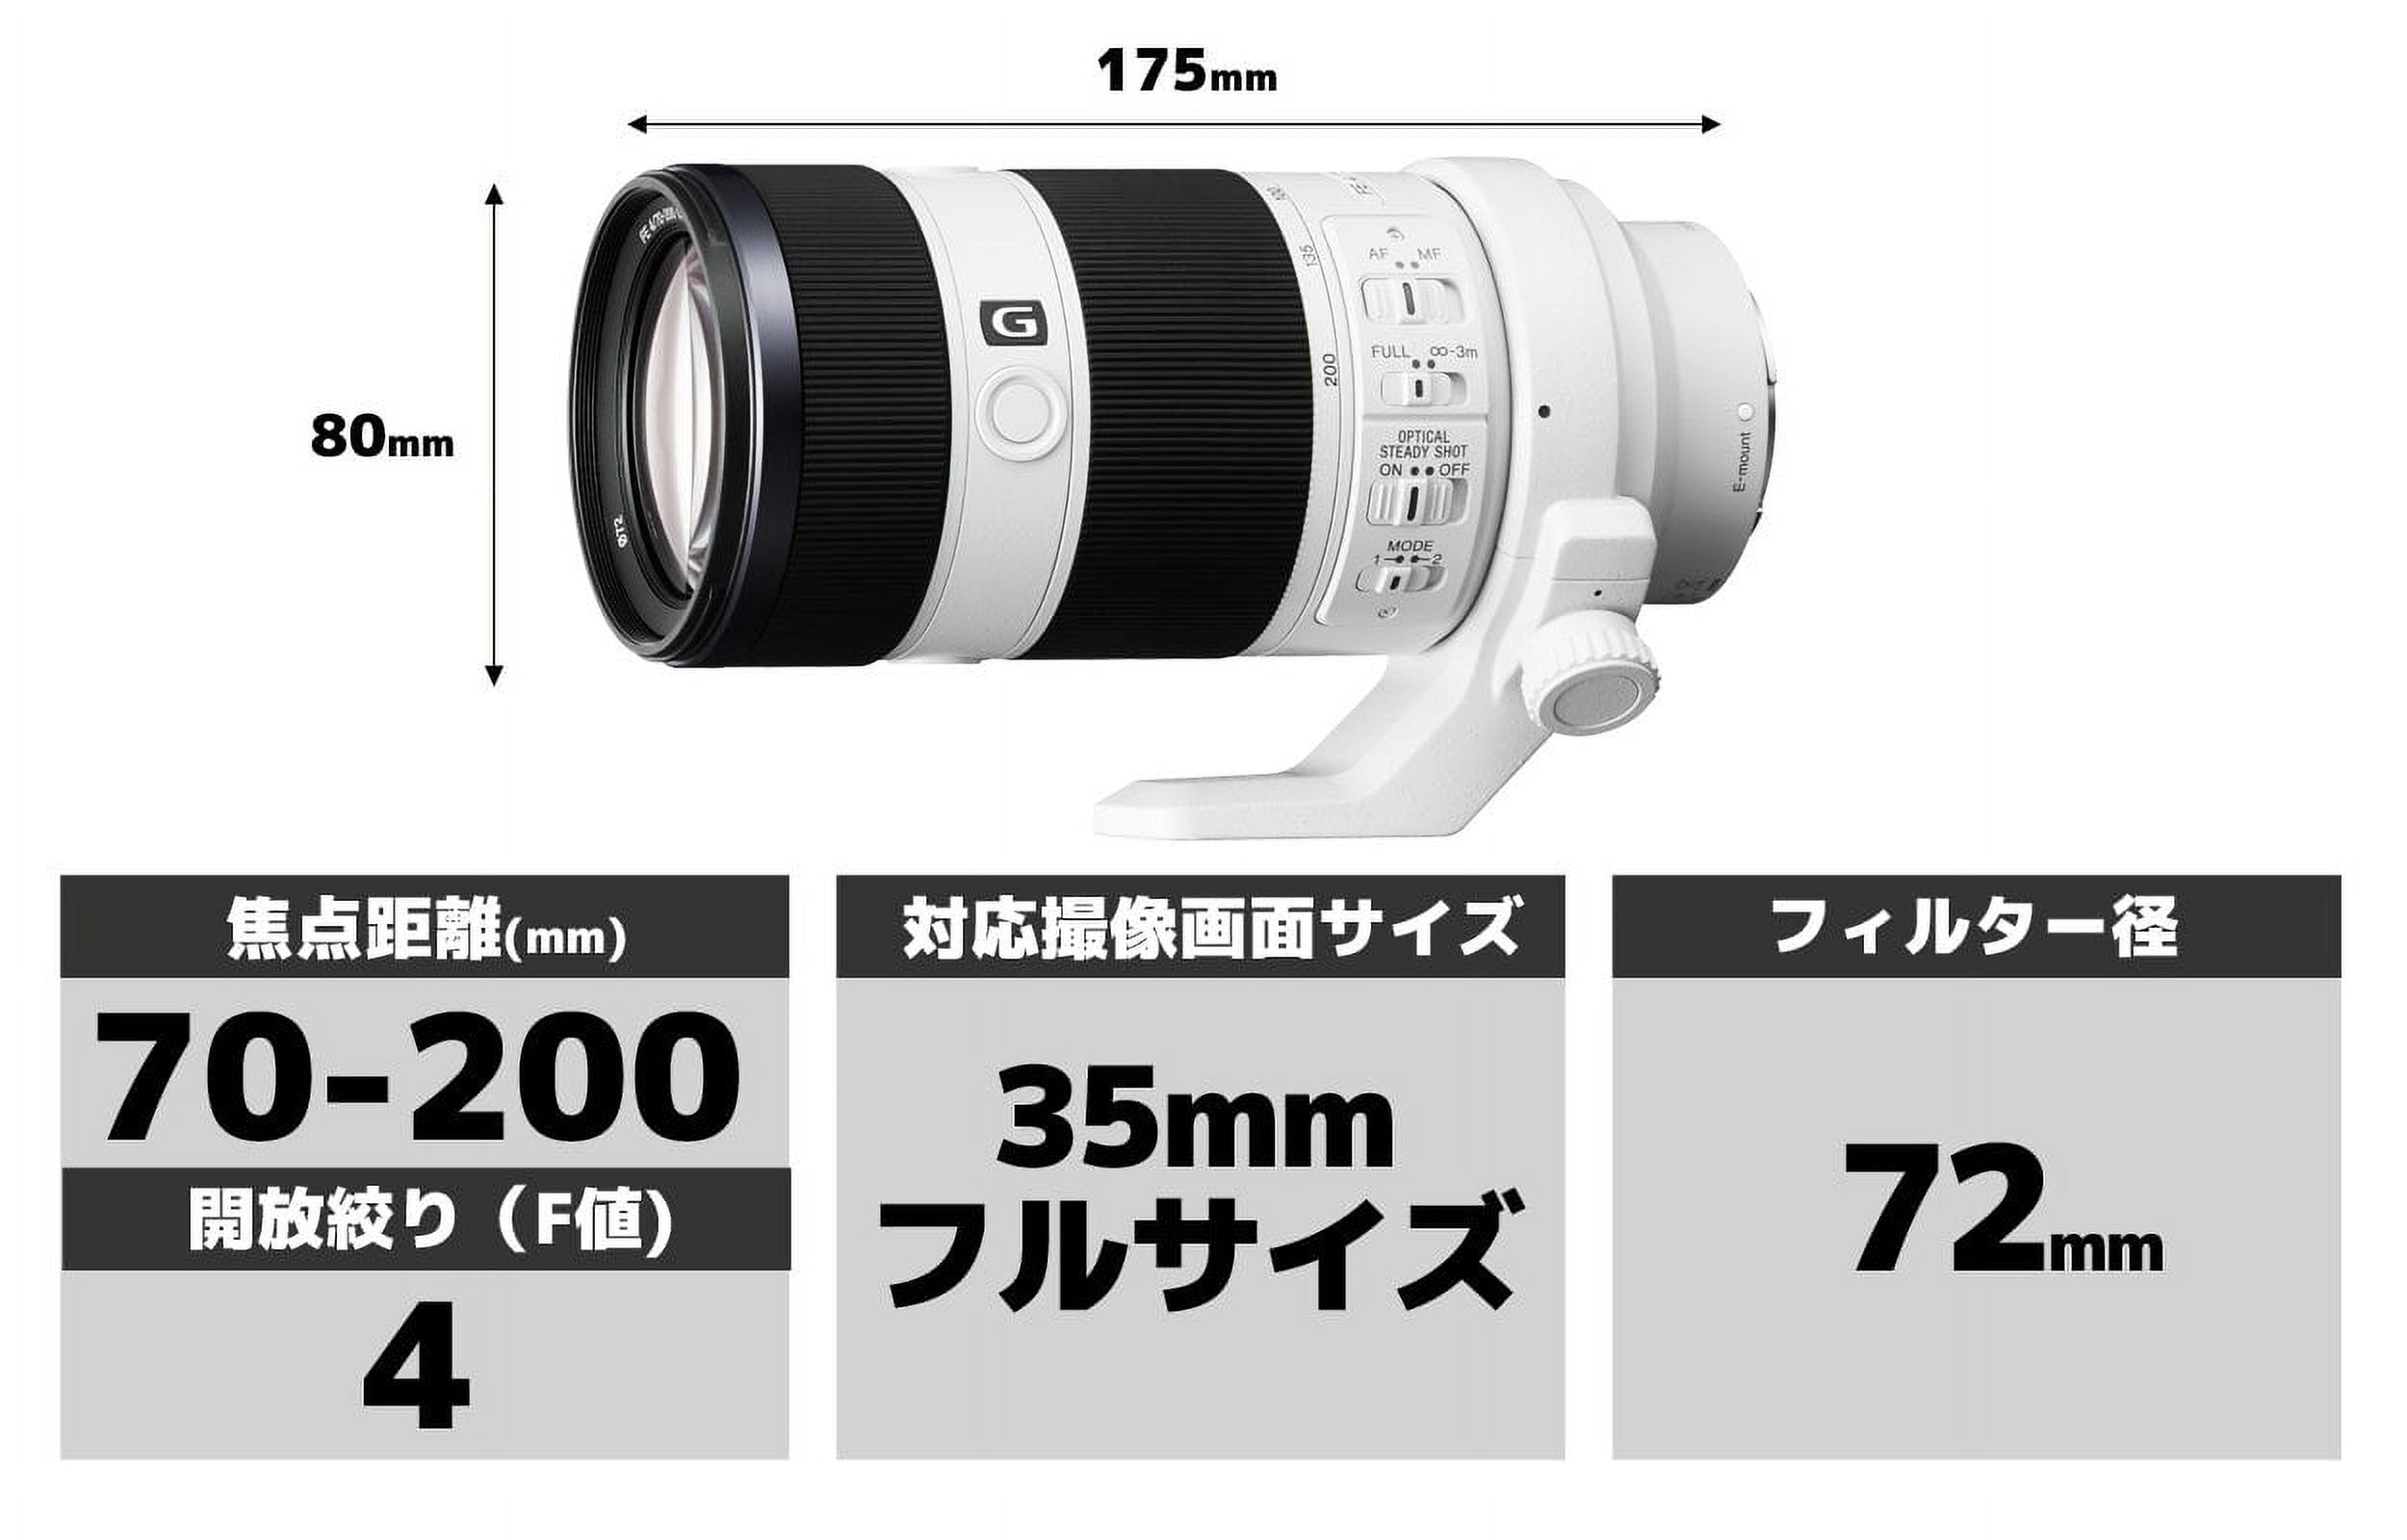 Sony SEL70200G FE 70-200mm F4 G OSS E-mount Full Frame Interchangeable Lens  - International Version (No Warranty)